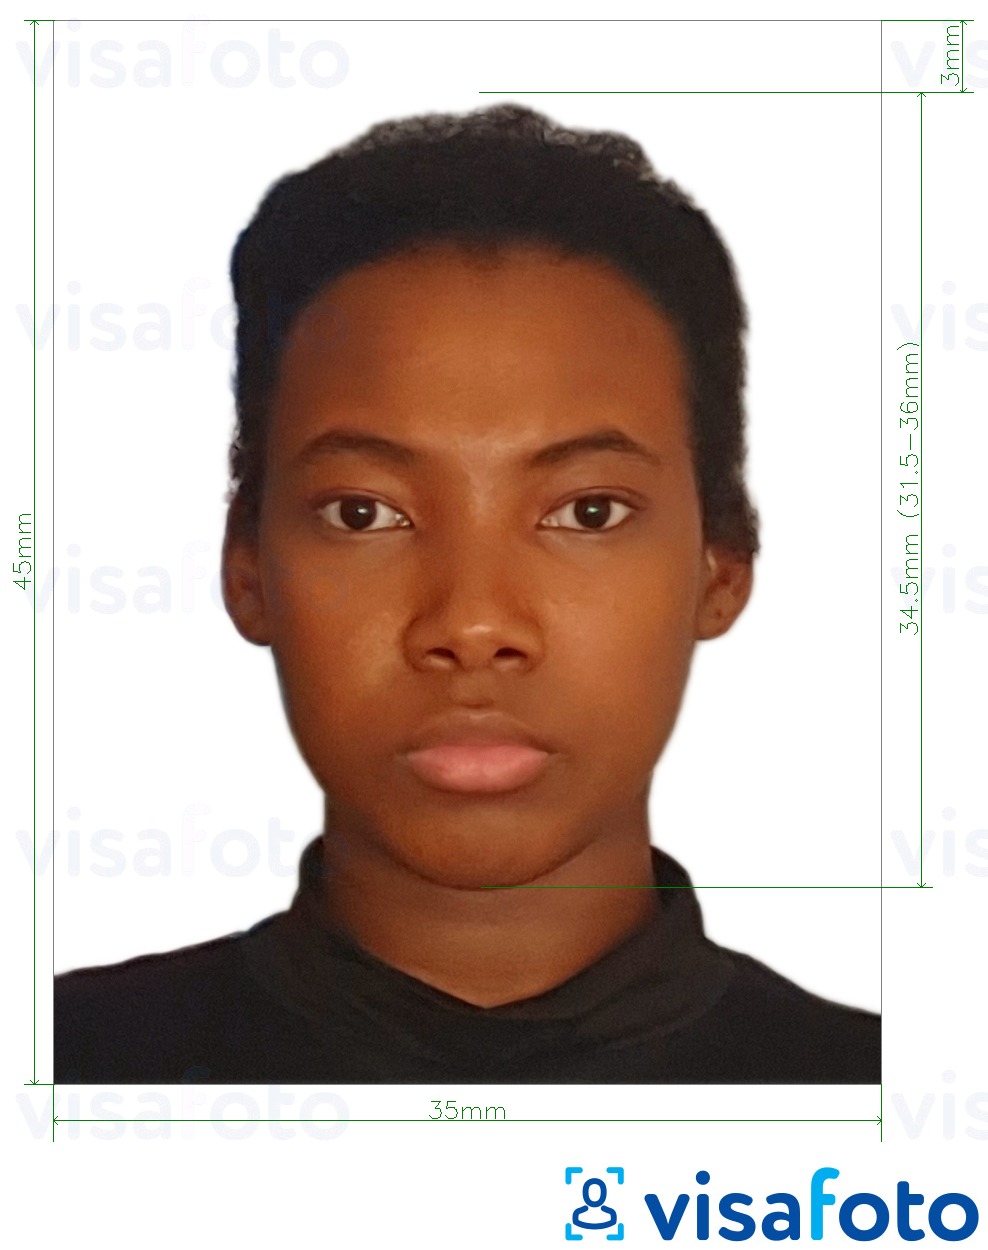 Exemple de foto per a Pasaporte Burkina Faso 4,5 x 3,5 cm (45x35 mm) amb la mida exacta especificada